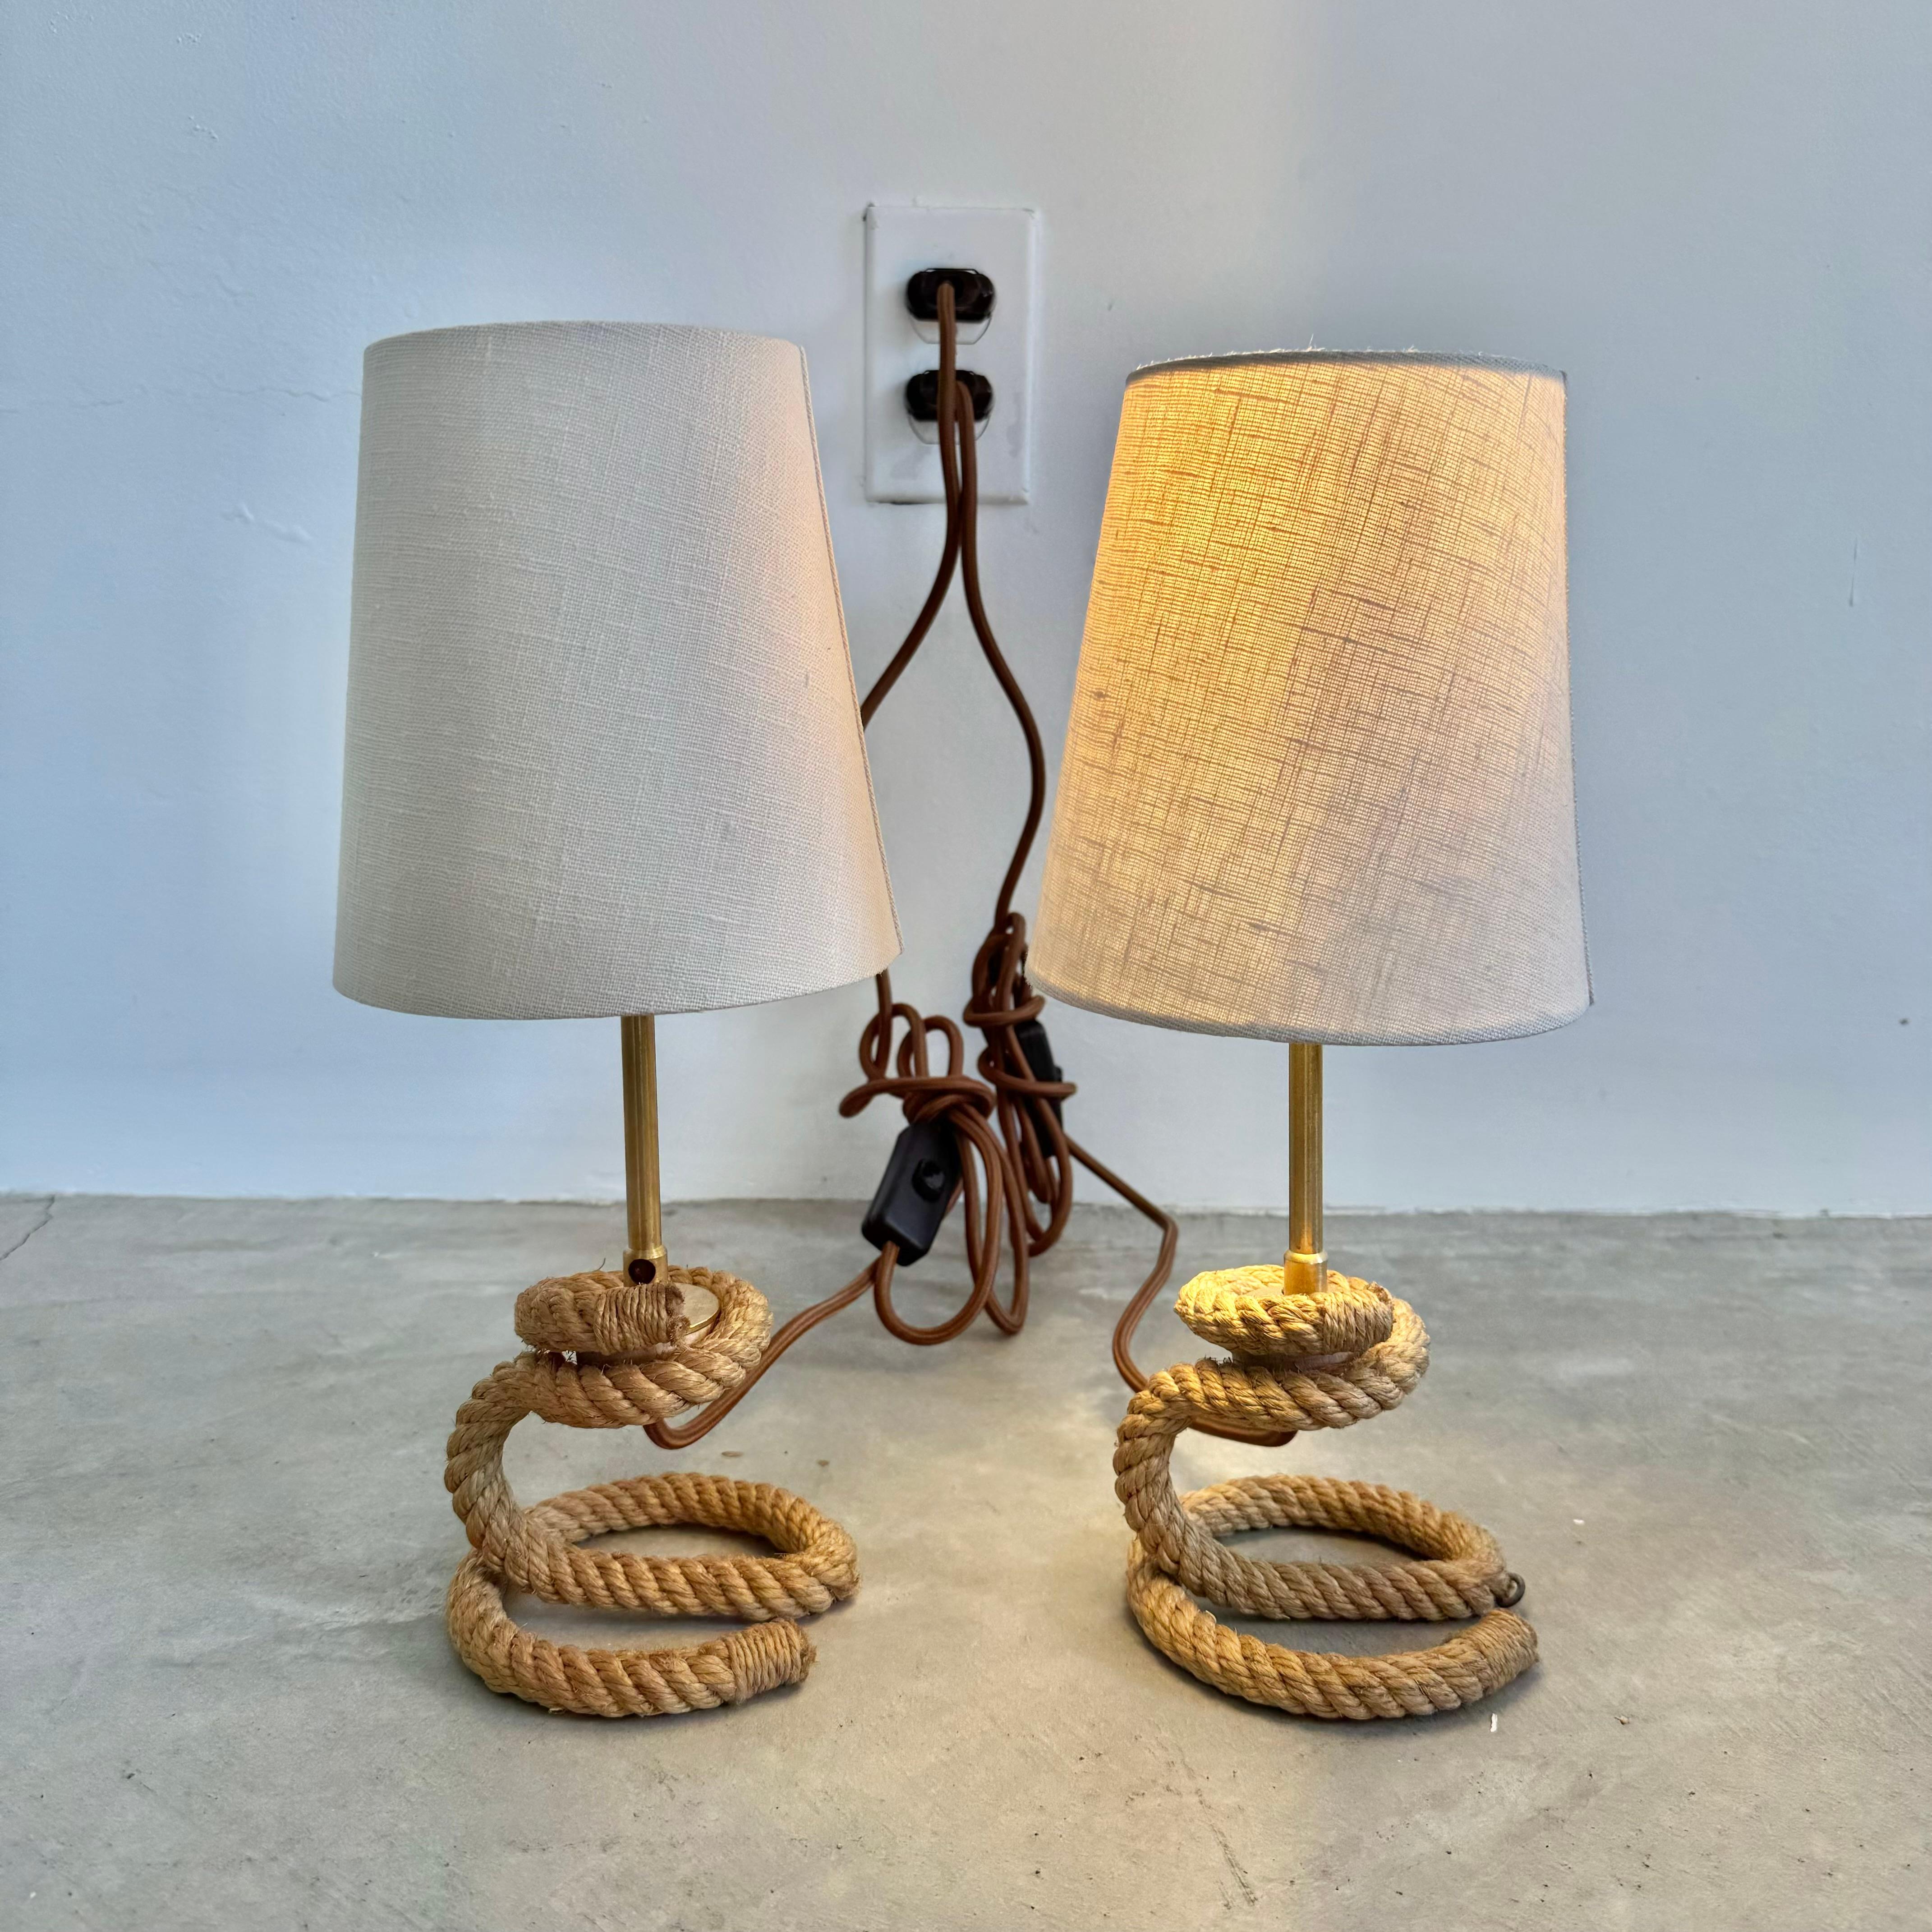 Paire de lampes de table sculpturales en corde torsadée dans le style des designers français Adrien Audoux et Frida Minet. Détails élégants.  Matériel en laiton. Les deux extrémités de la base de la corde sont entourées de ficelle. La base de la